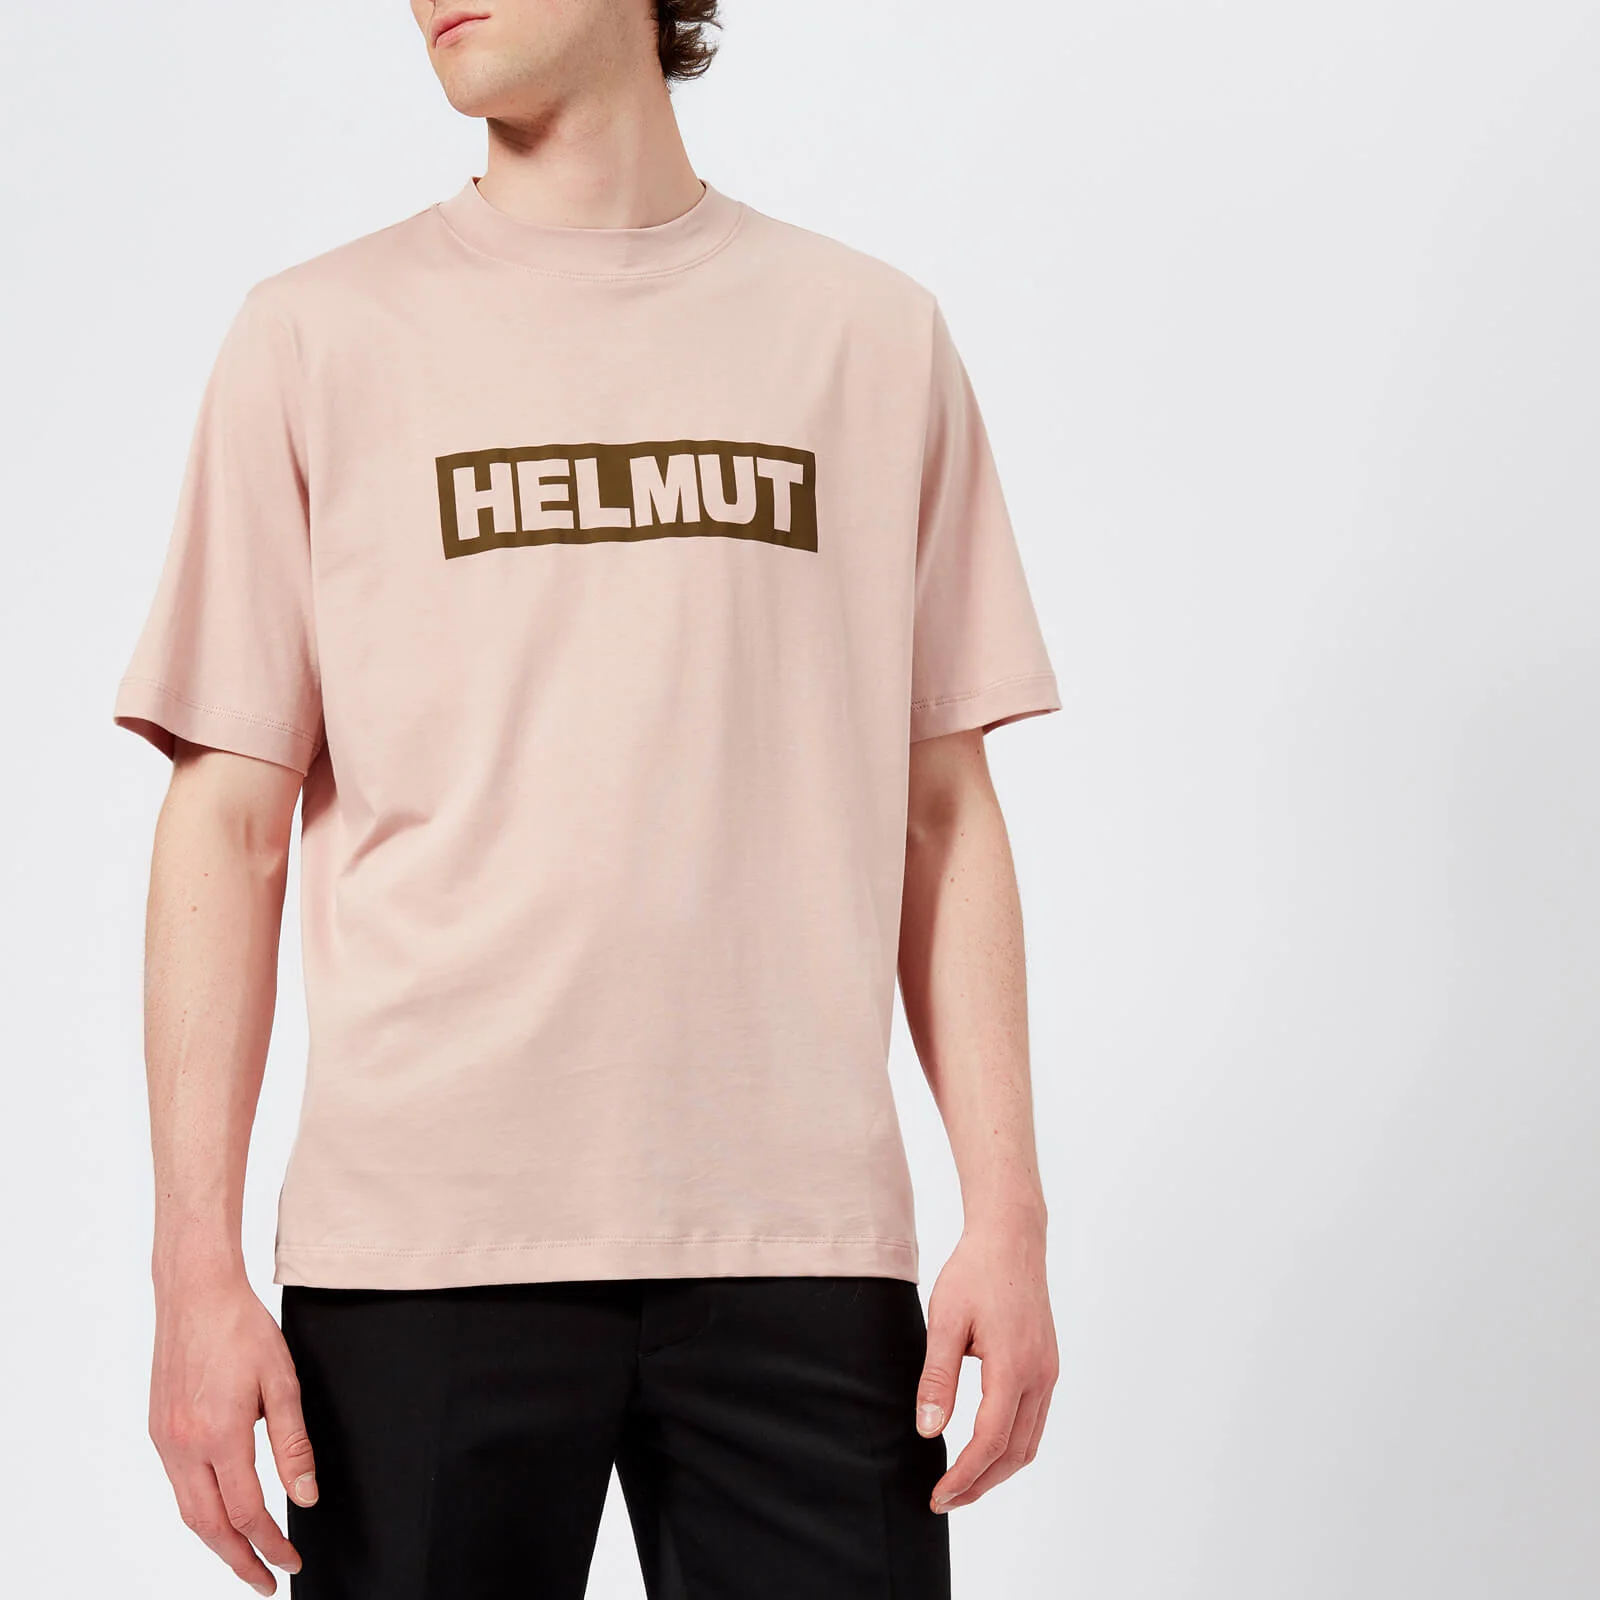 Helmut Lang Men's Helmut Box Logo T-Shirt - Desert Rose Image 1